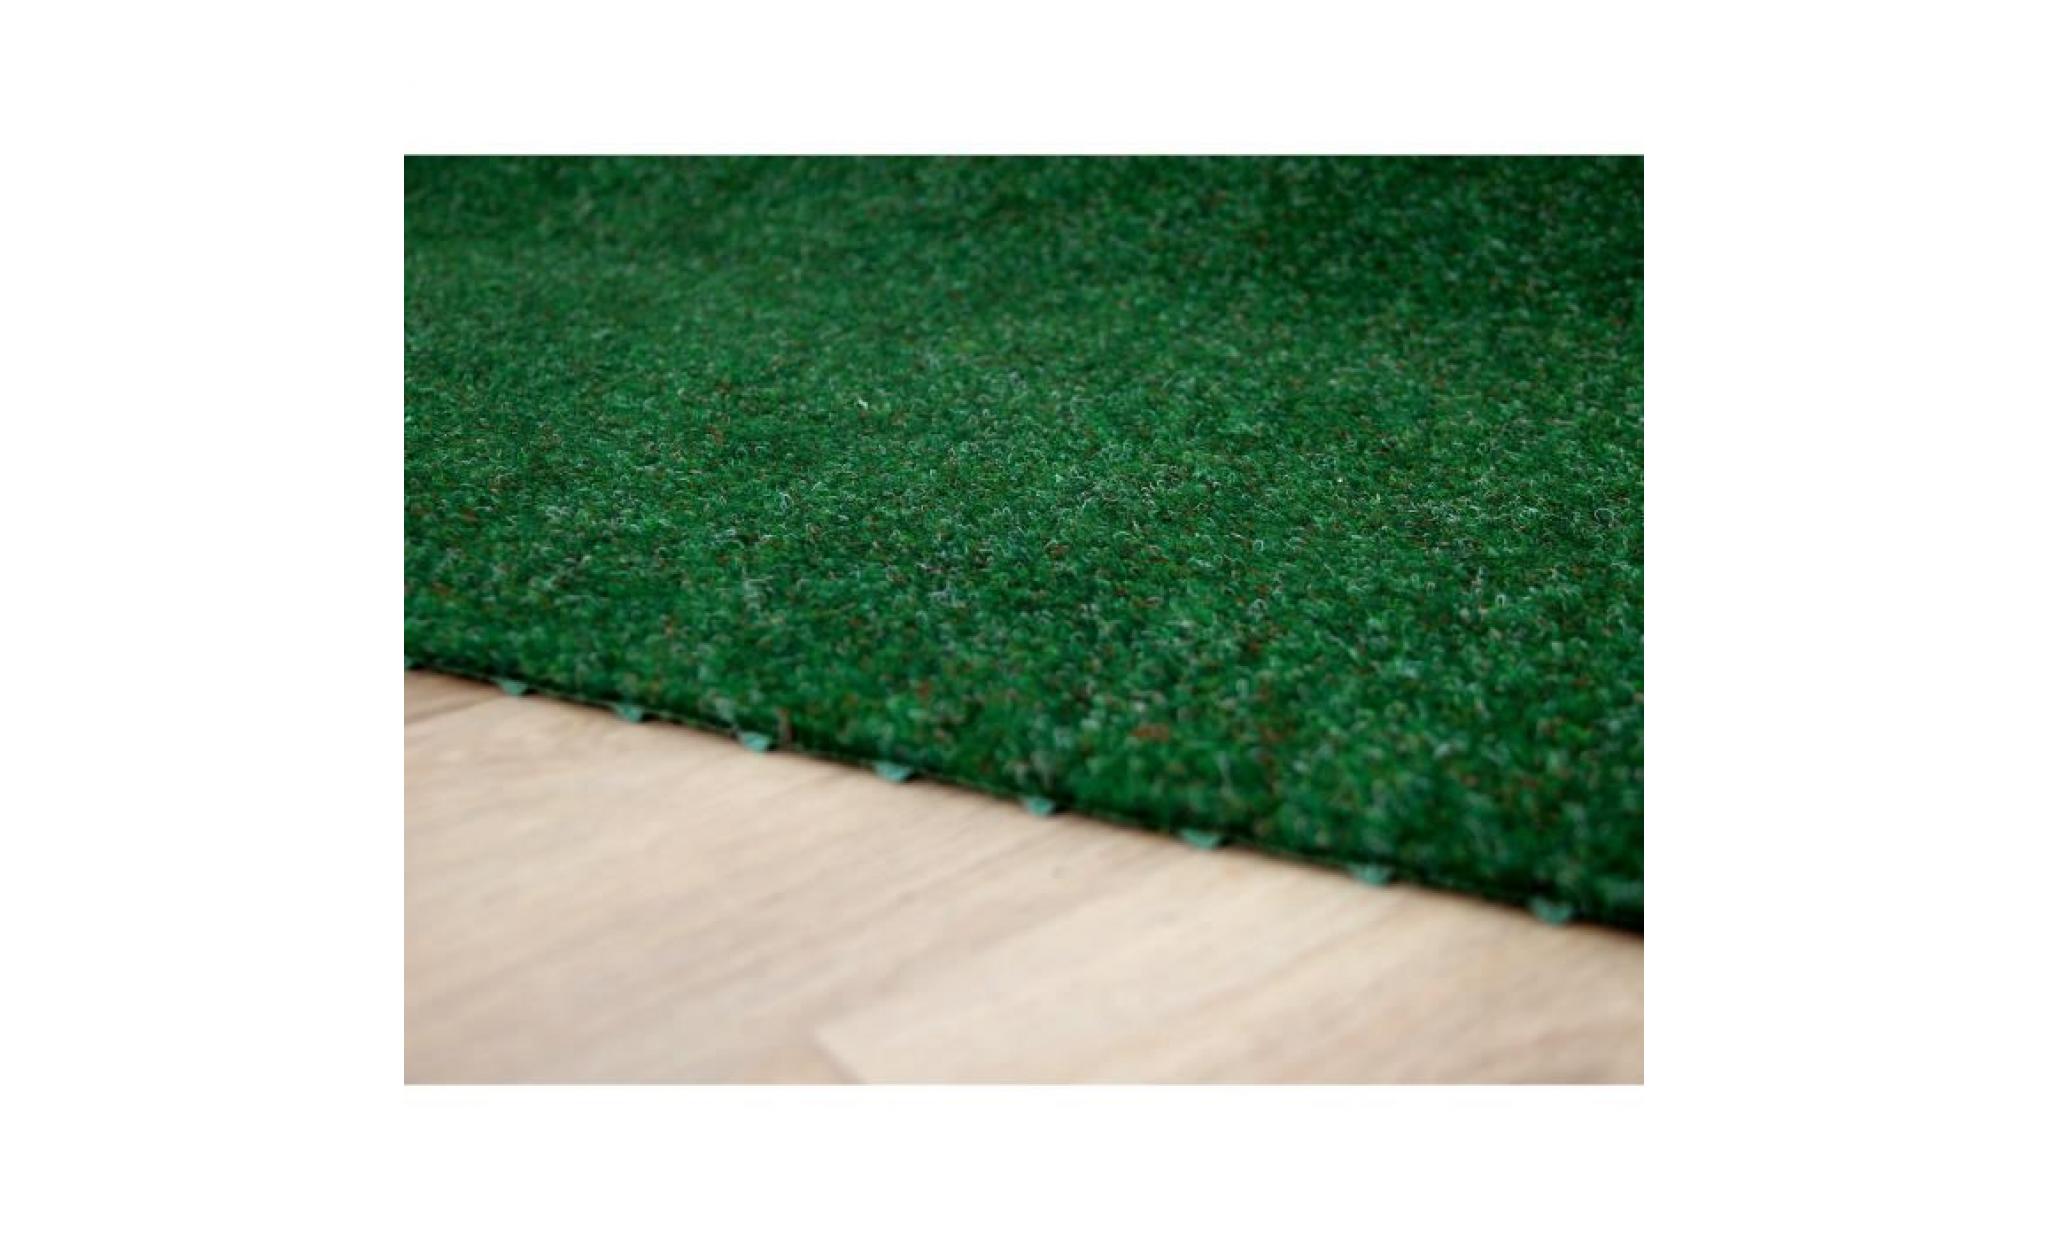 kingston   tapis type gazon artificiel – pour jardin, terrasse, balcon   brun [200x450 cm] pas cher